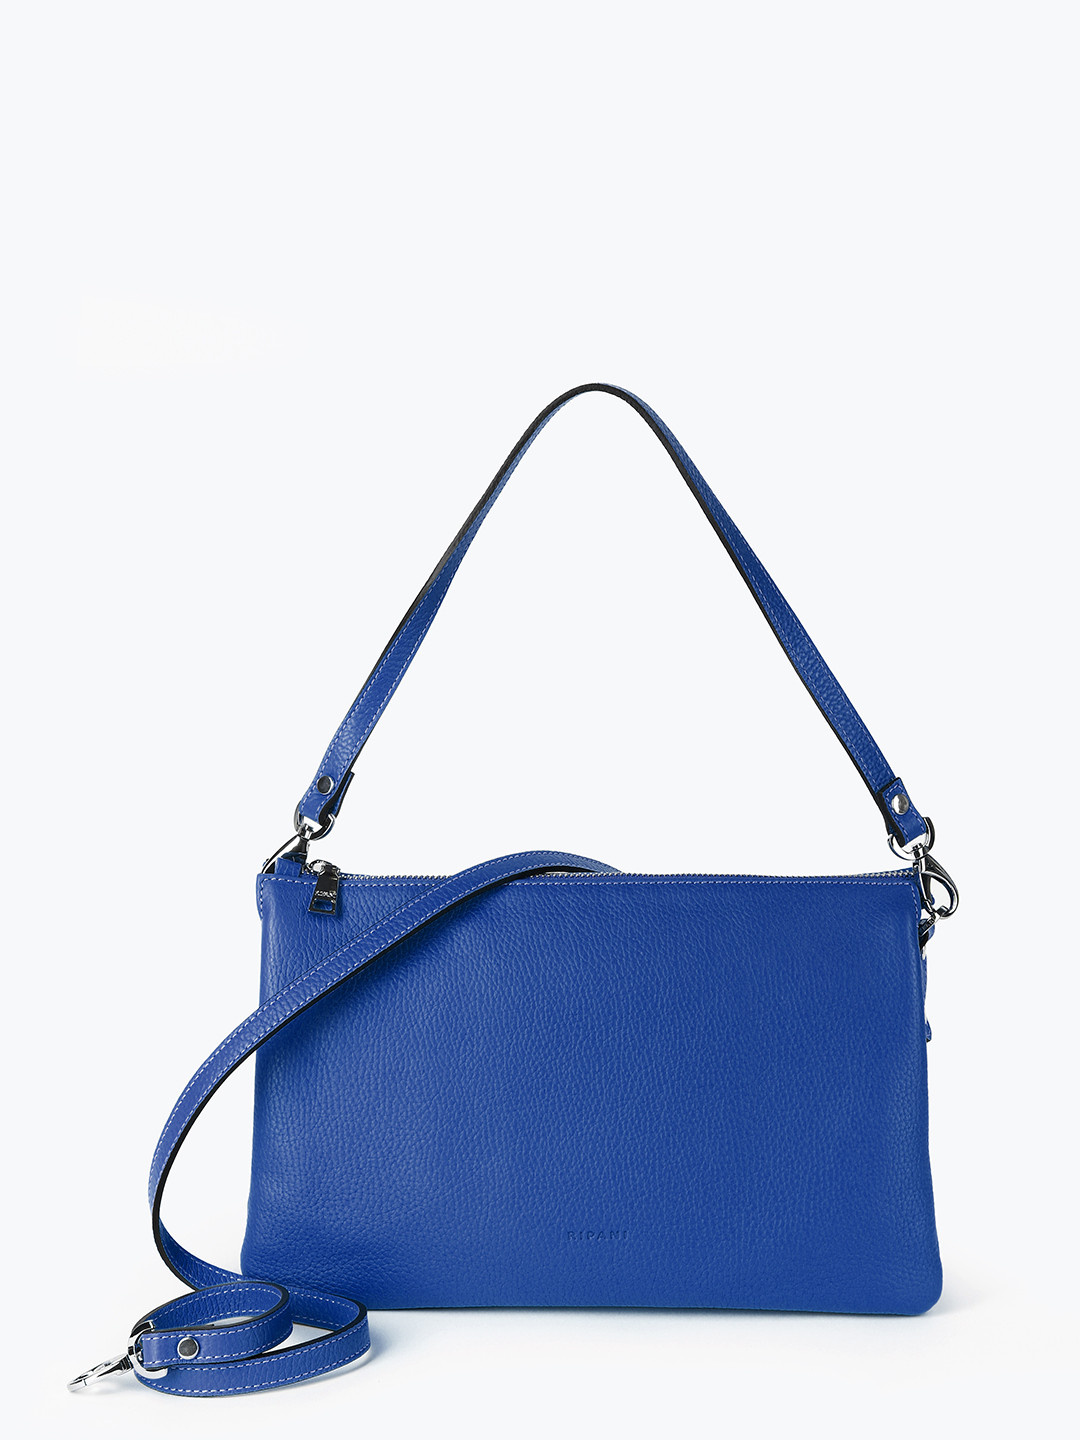 Мужские сумки синего цвета — как и с чем носить